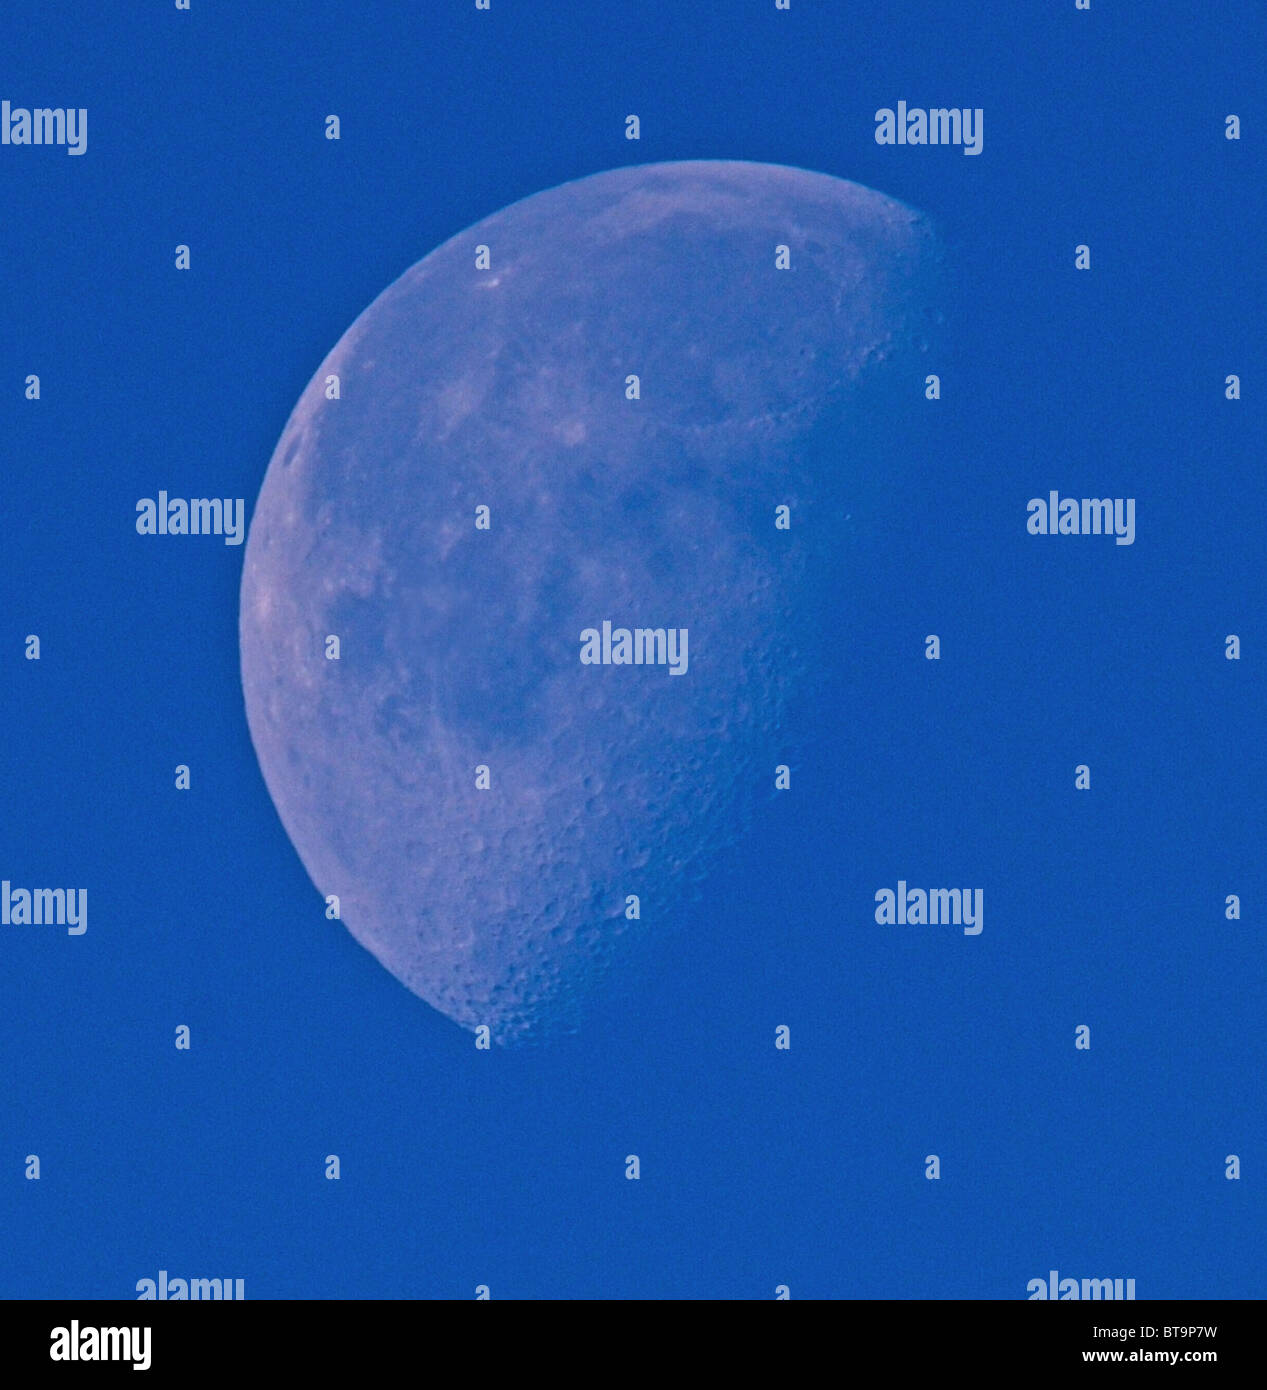 Blue Moon - la lune vue dans le ciel en plein jour prend souvent une couleur bleue. Banque D'Images